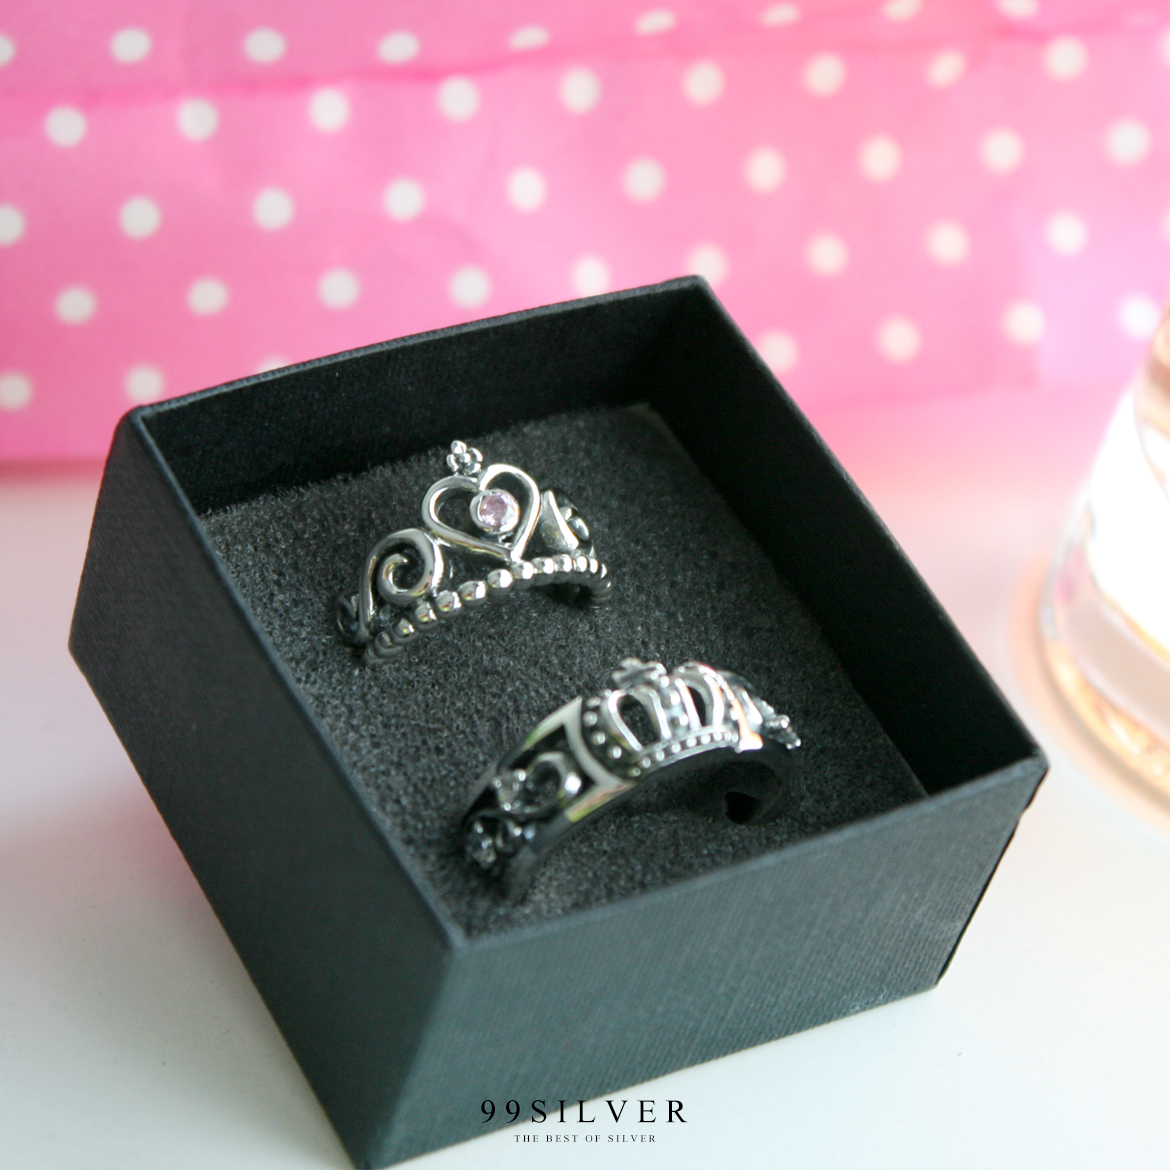 แหวนมงกุฎ เจ้าชาย-เจ้าหญิง ฝังเพชรประดับเล็กน้อยสวยงาม ดีไซน์สวยคู่กัน